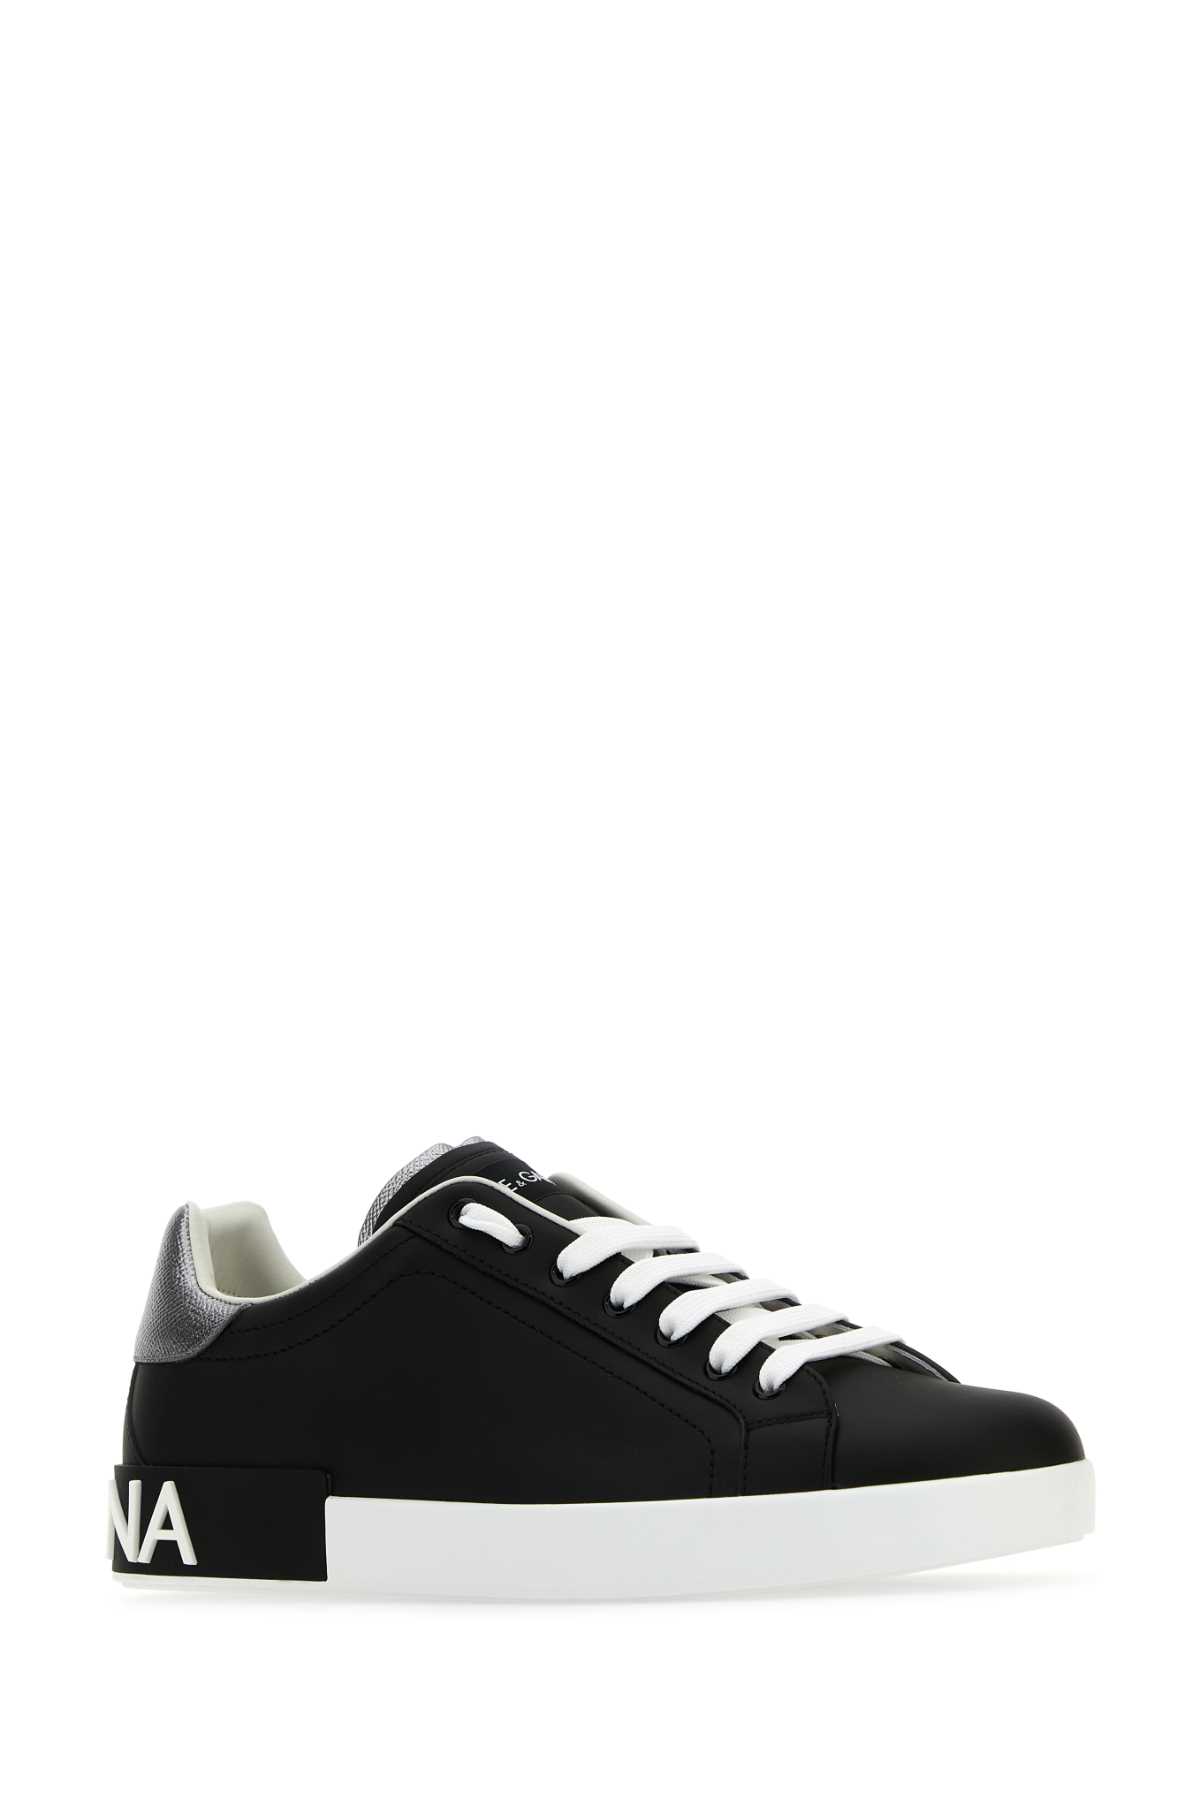 Dolce & Gabbana Black Nappa Leather Portofino Sneakers In Neroargento